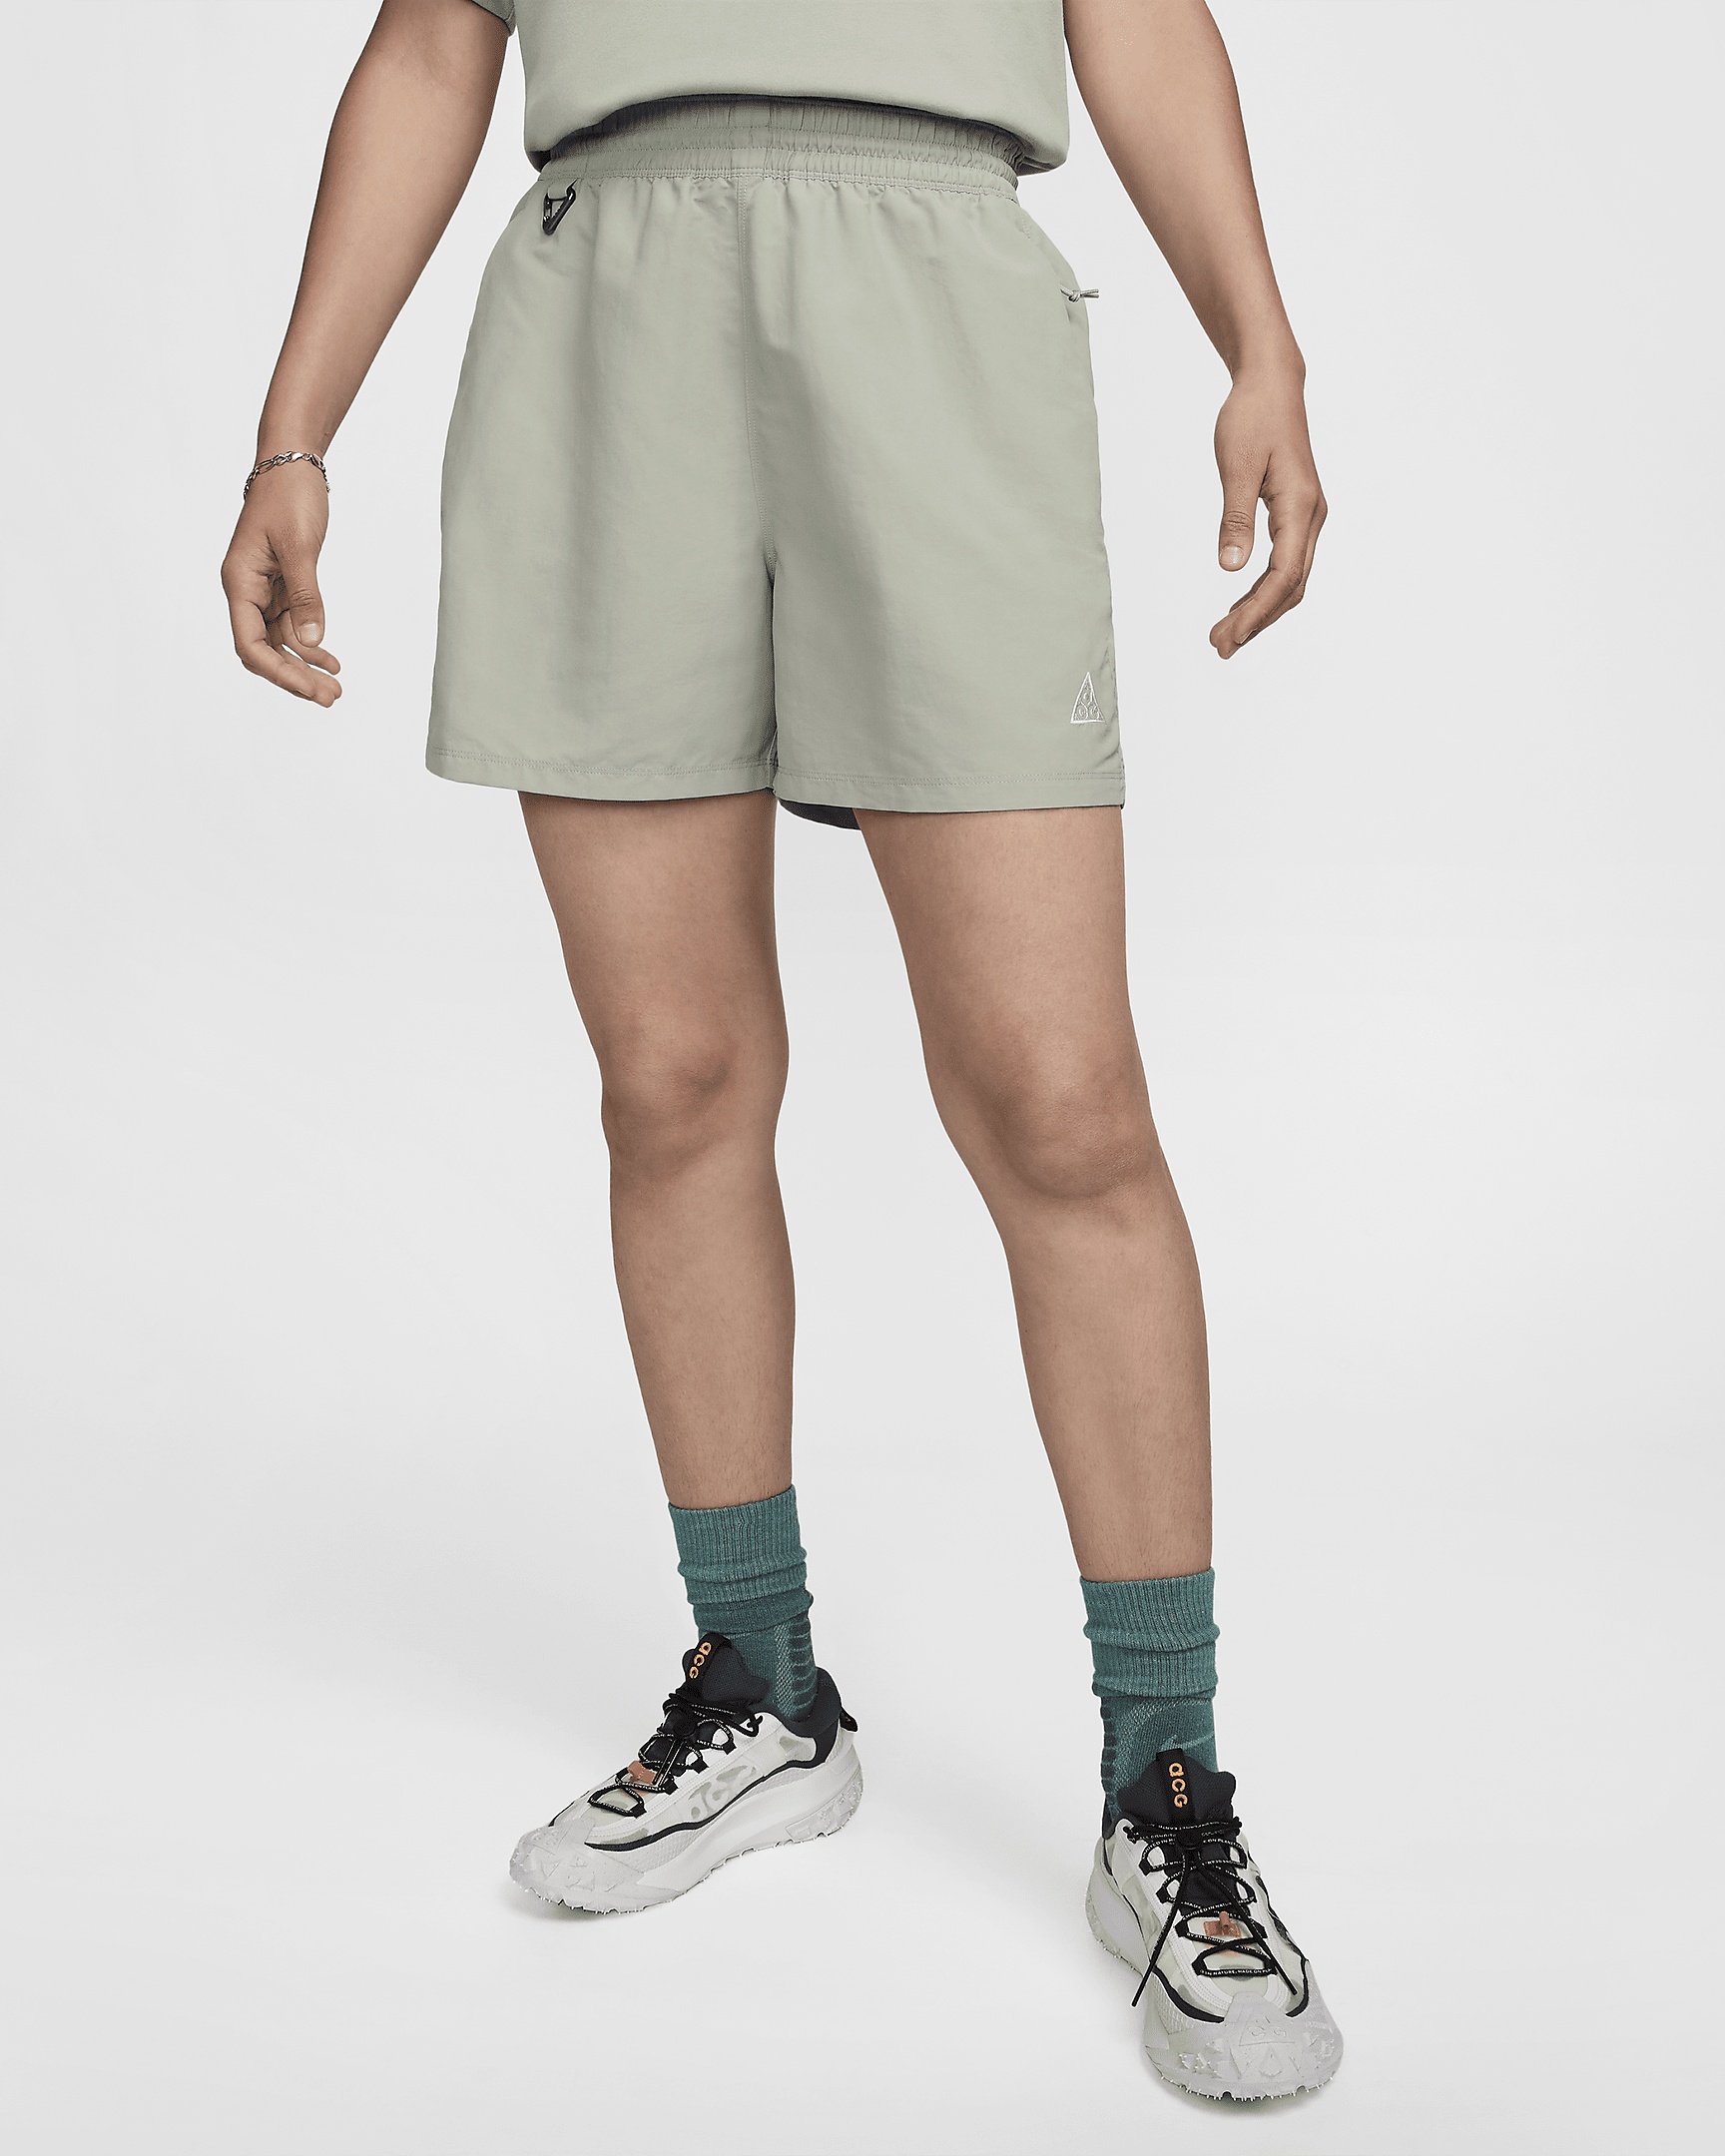 Women's Nike ACG 5" Shorts - 1